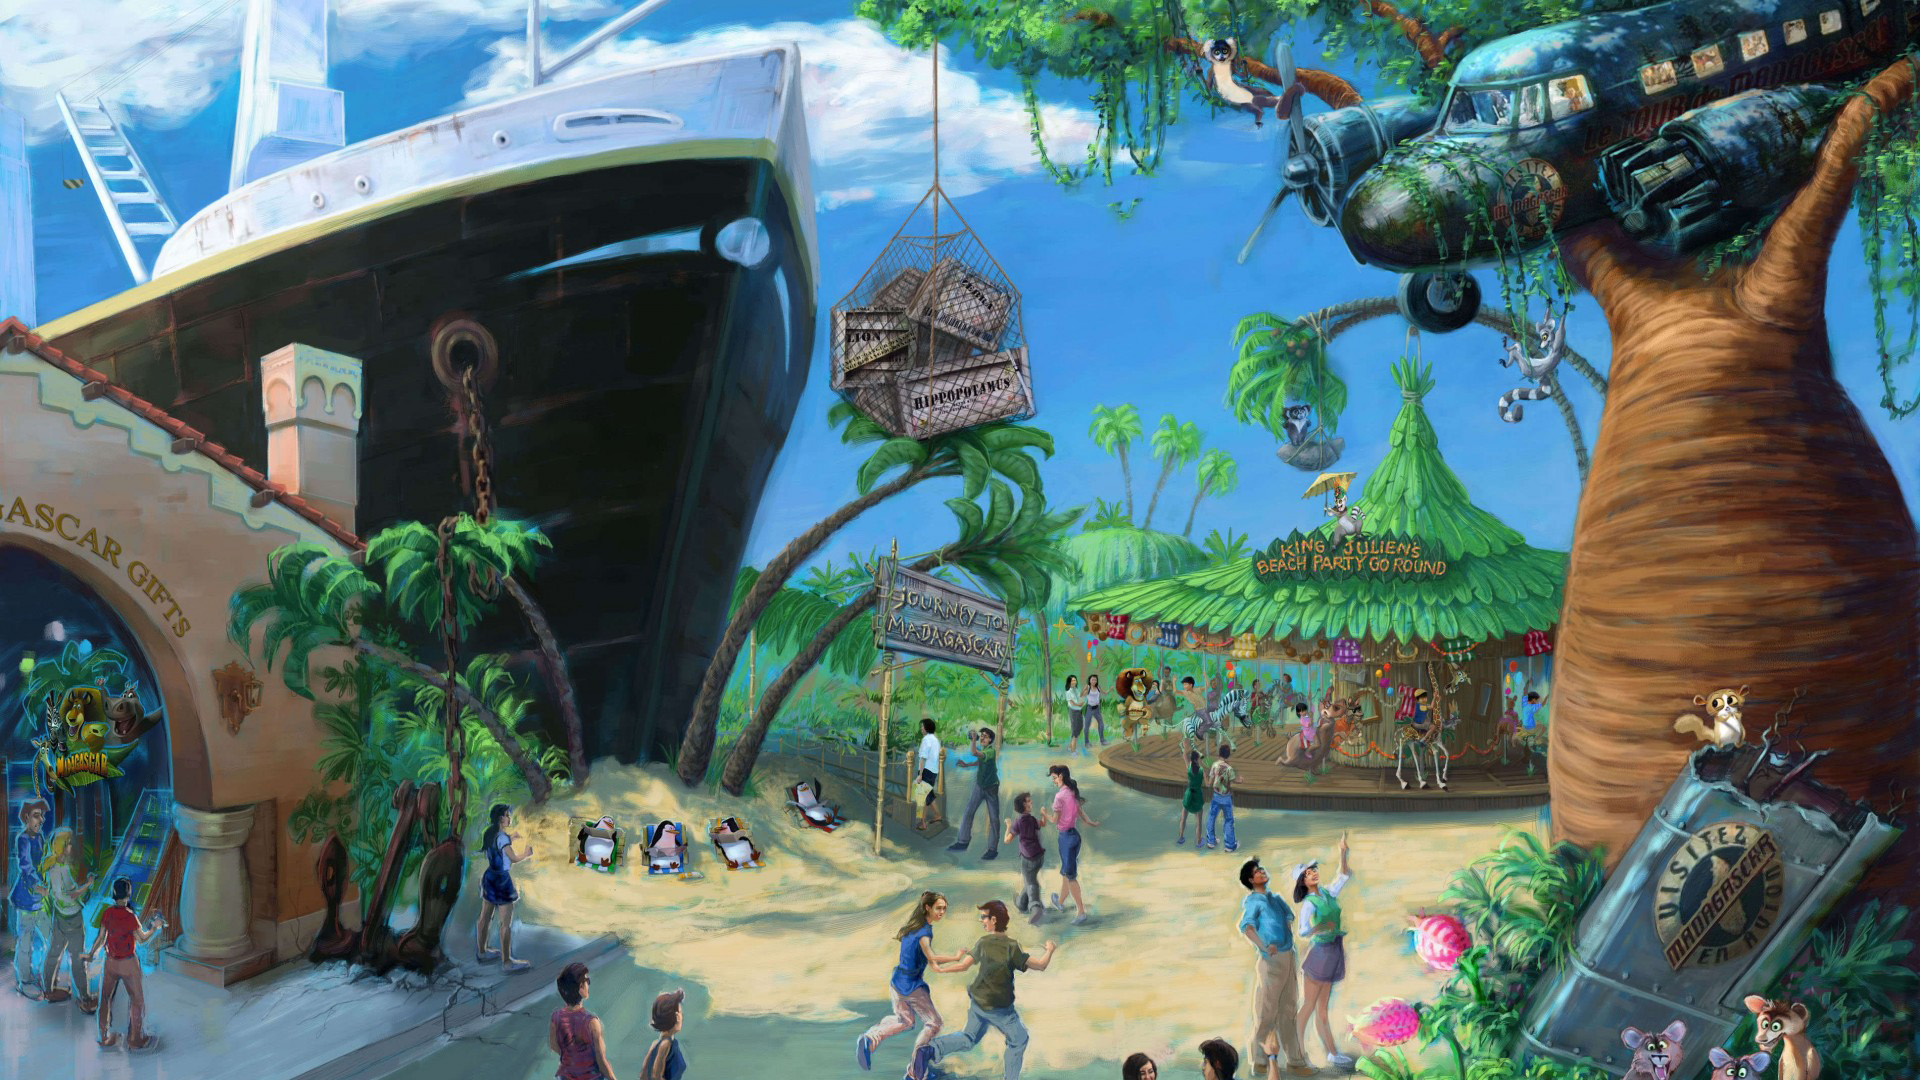 马达加斯加,船舶上的风景图画,桌面壁纸